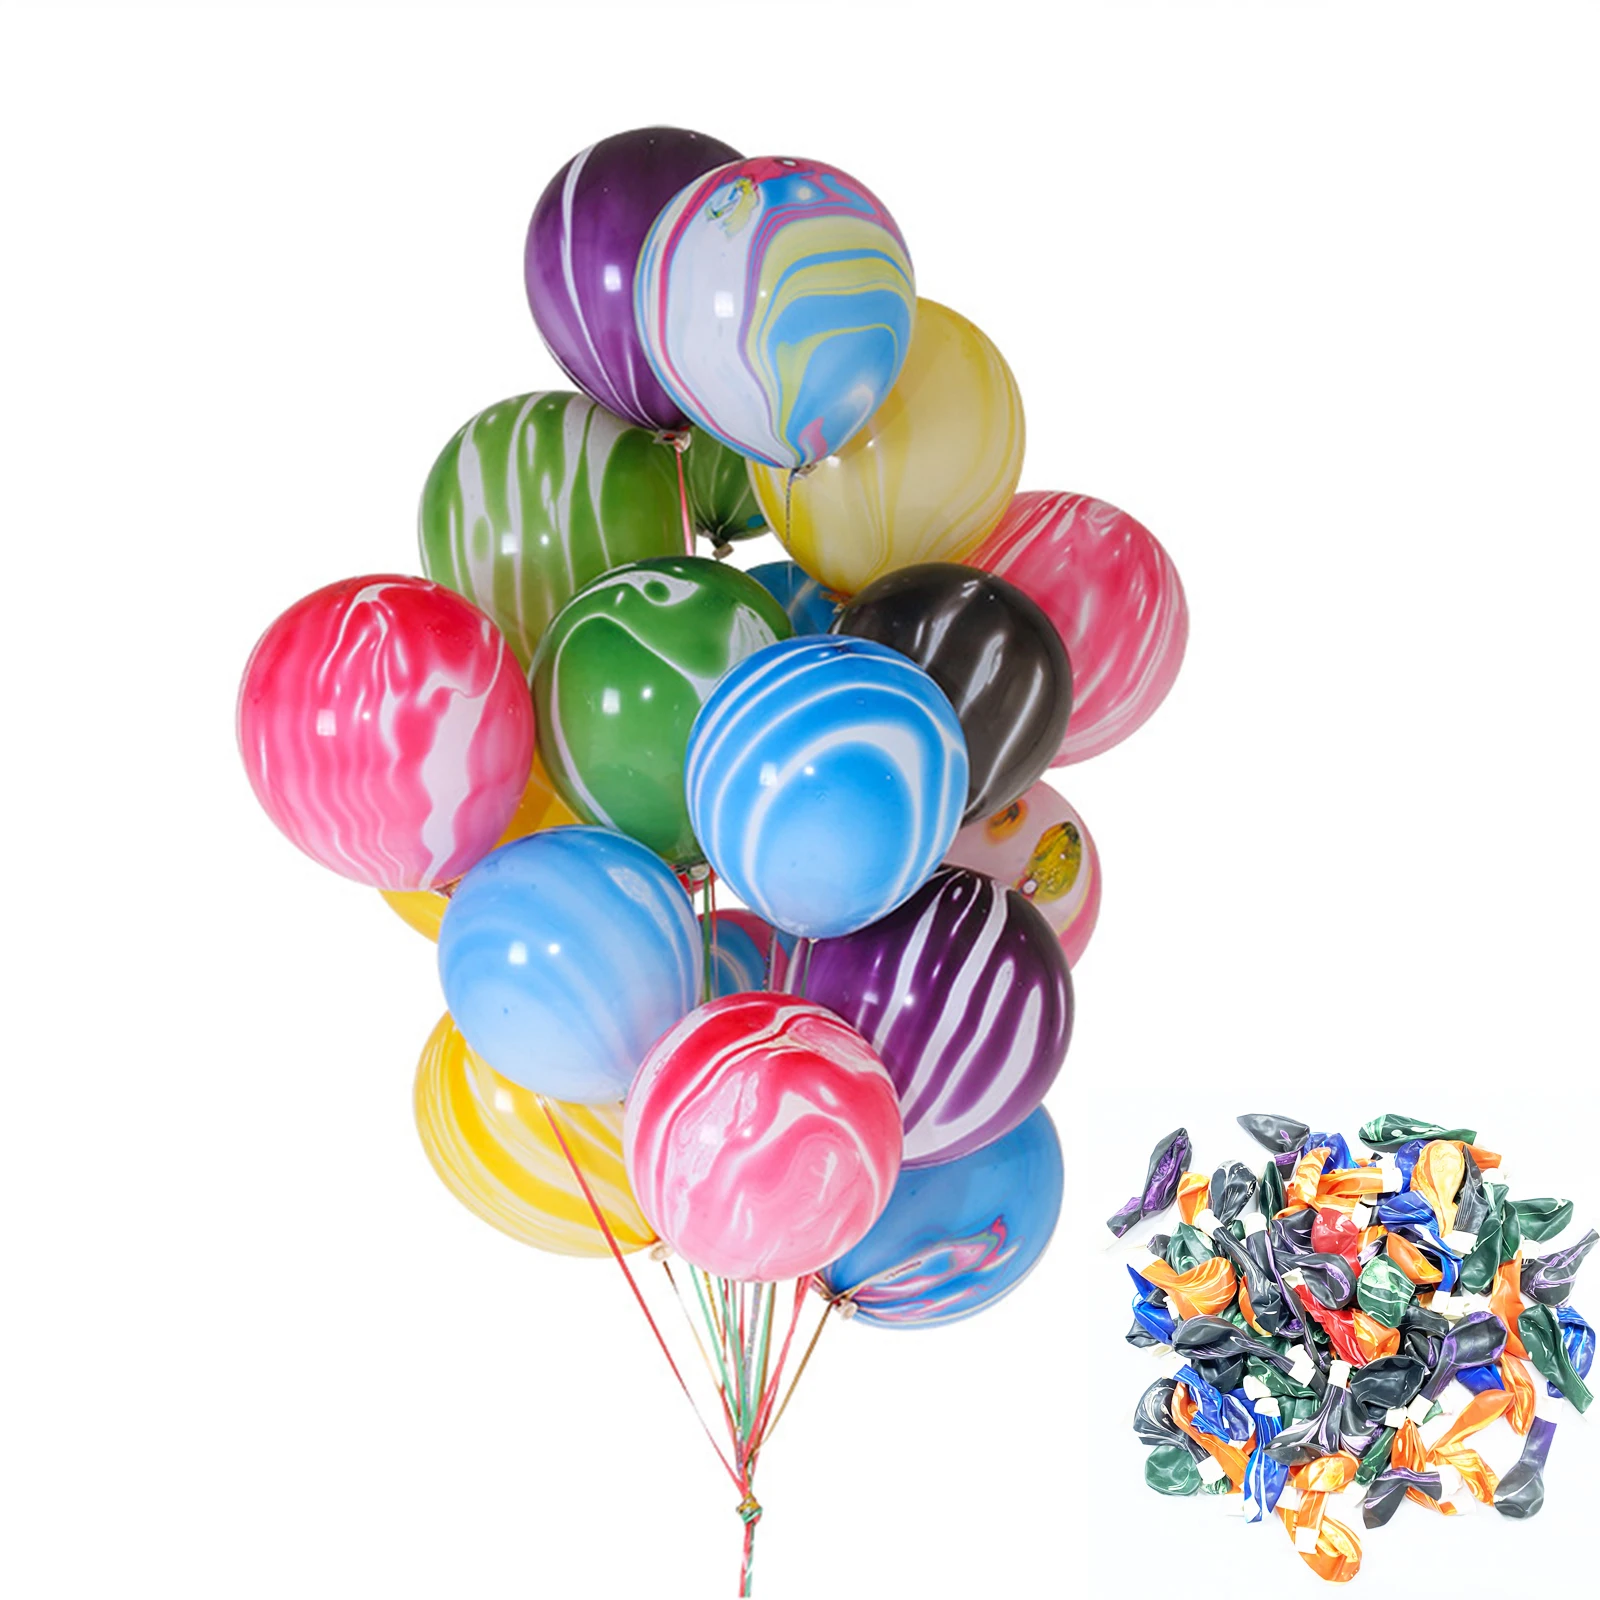 

100 шт. Мрамор Агатовые латексные воздушные шары, 10 дюймов тай-дай радужные воздушные шары, завиток, воздушные шары, воздушные шары с гелием, н...